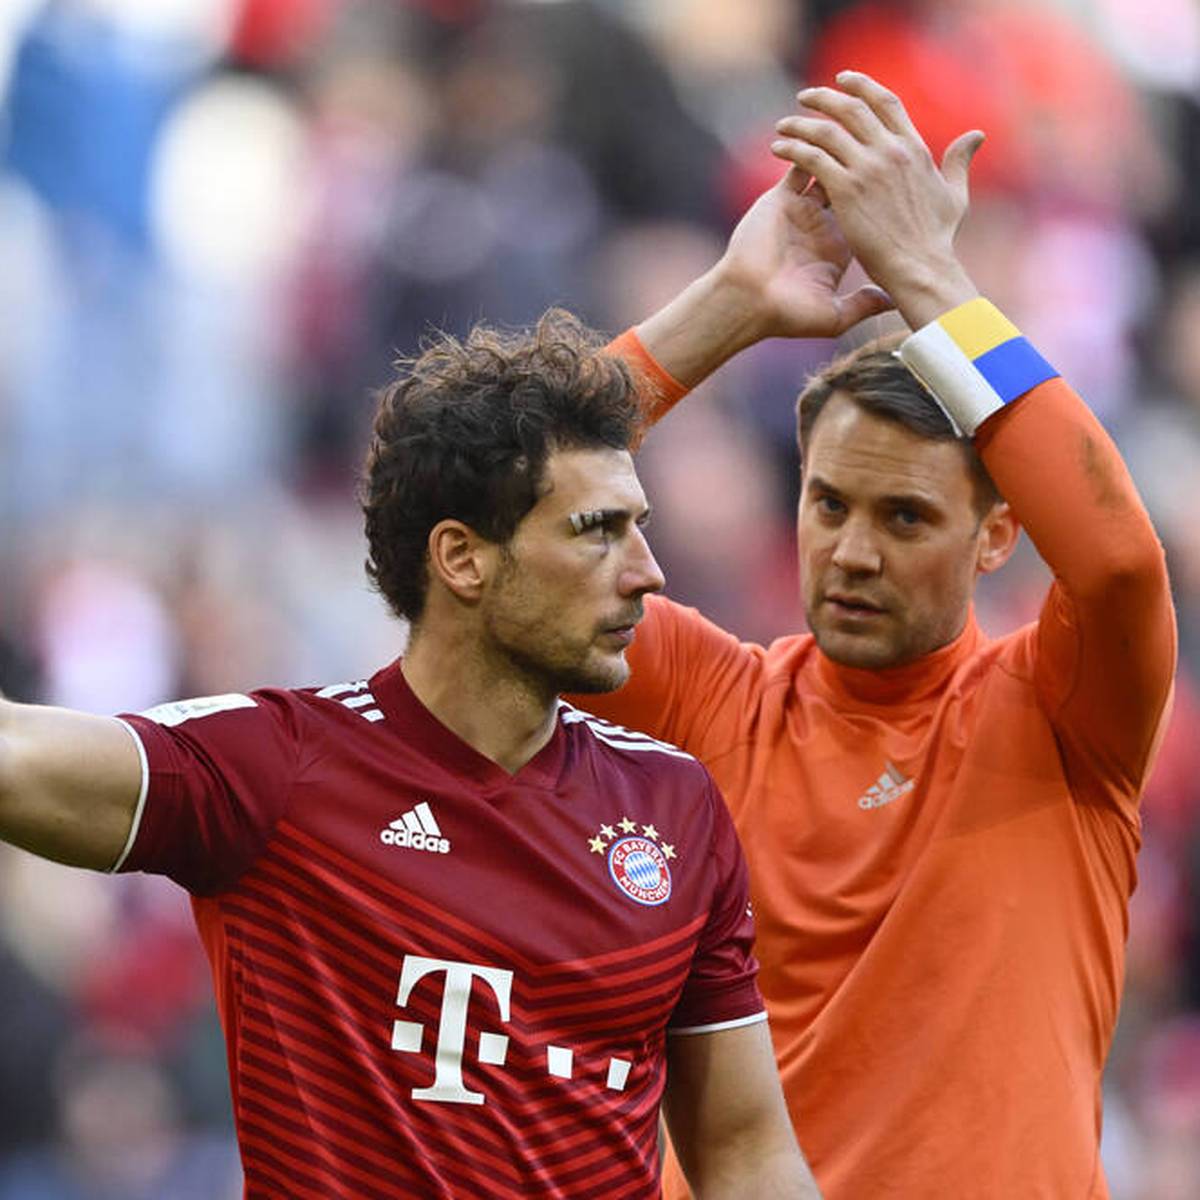 Für den FC Bayern gibt es am Dienstag gute Nachrichten. Nach SPORT1-Informationen können die beiden DFB-Stars Manuel Neuer und Leon Goretzka im kommenden Bundesliga-Spiel gegen Bayer Leverkusen wieder mitwirken.